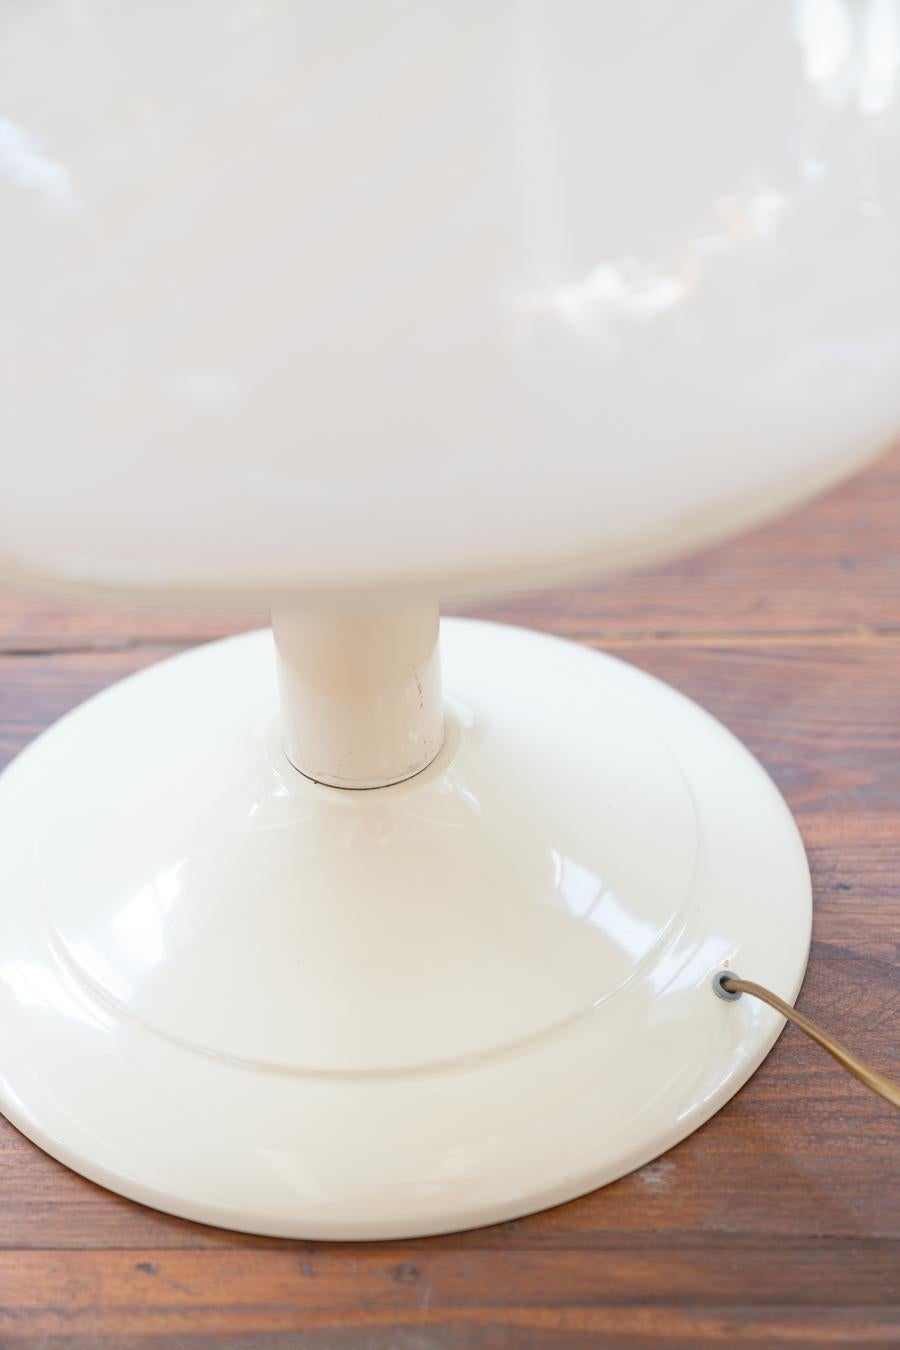 Steinhauer Atomic Vintage lampe champignon
Merveilleuse pièce de spaceage, lampe champignon vintage années 	années 70 par la prestigieuse Steinhauer, fonctionnelle dans son design 	intemporel
Créateur : Steinheuer
Matériau
Aluminium, verre de